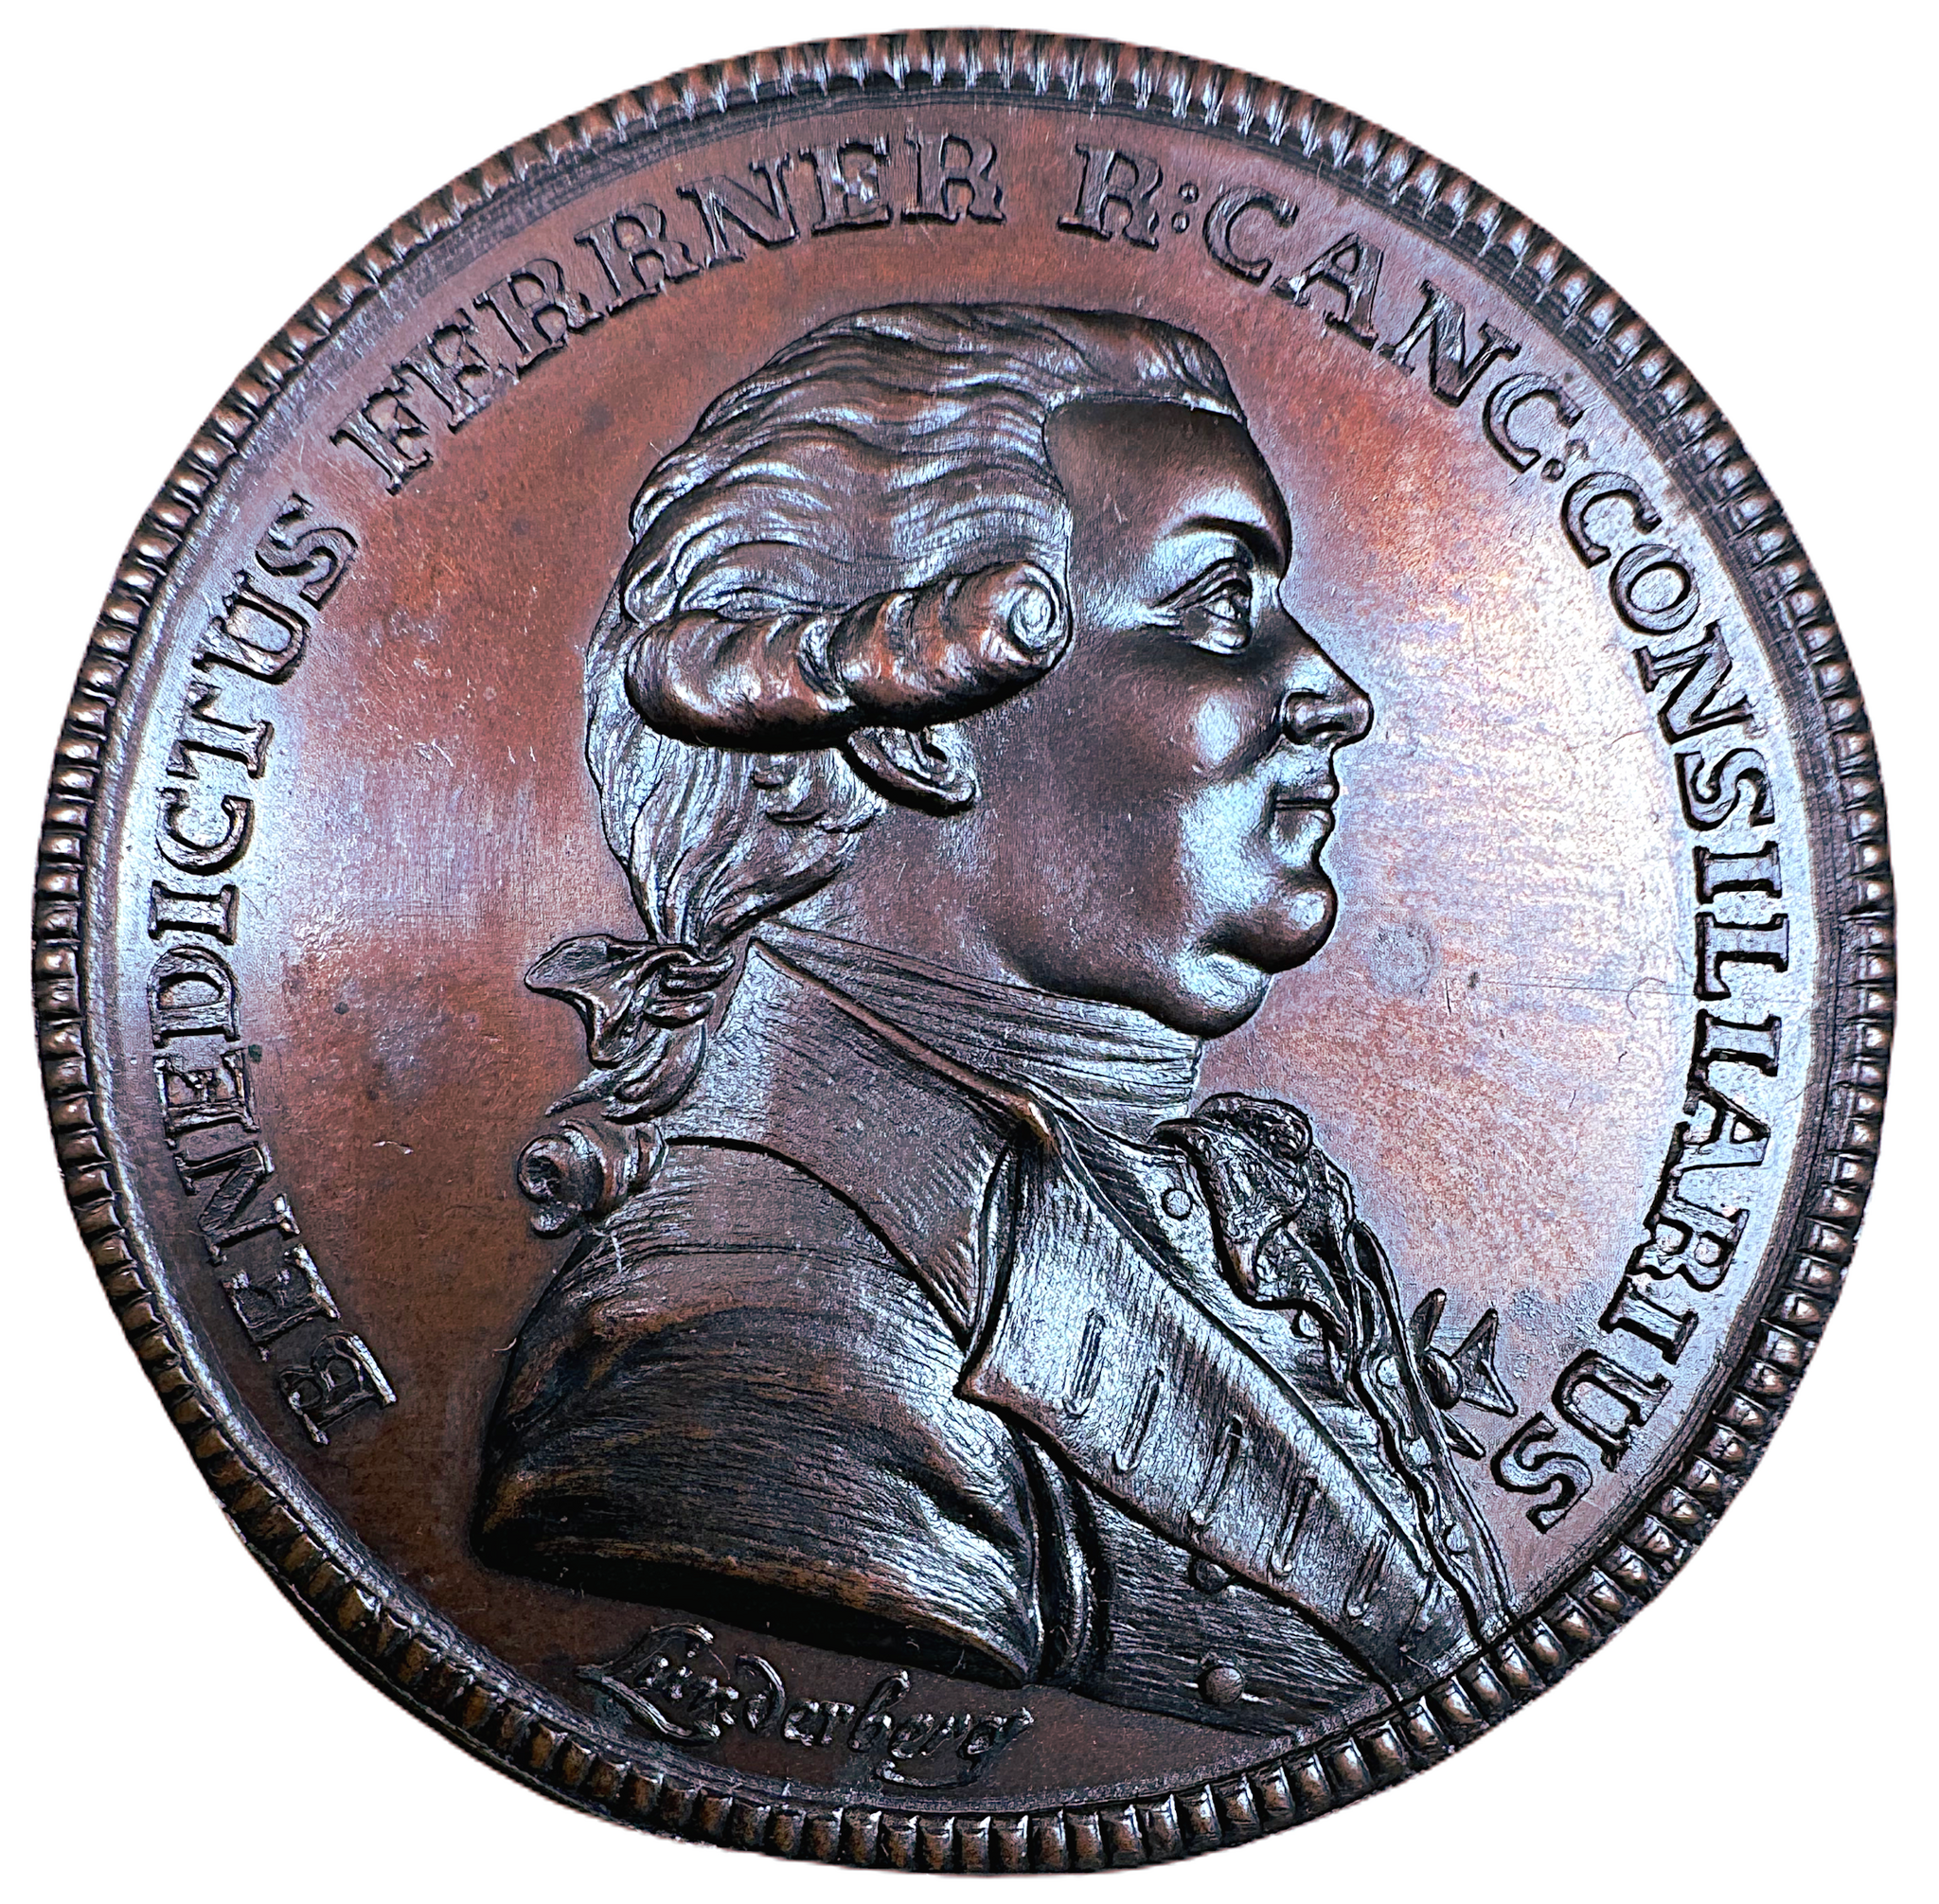 Bengt Ferrner (1724-1802) - Astronom och lärare åt kronprins Gustav (III) - av Lorentz Lunderberg 1803 - Ett underbart praktfullt exemplar